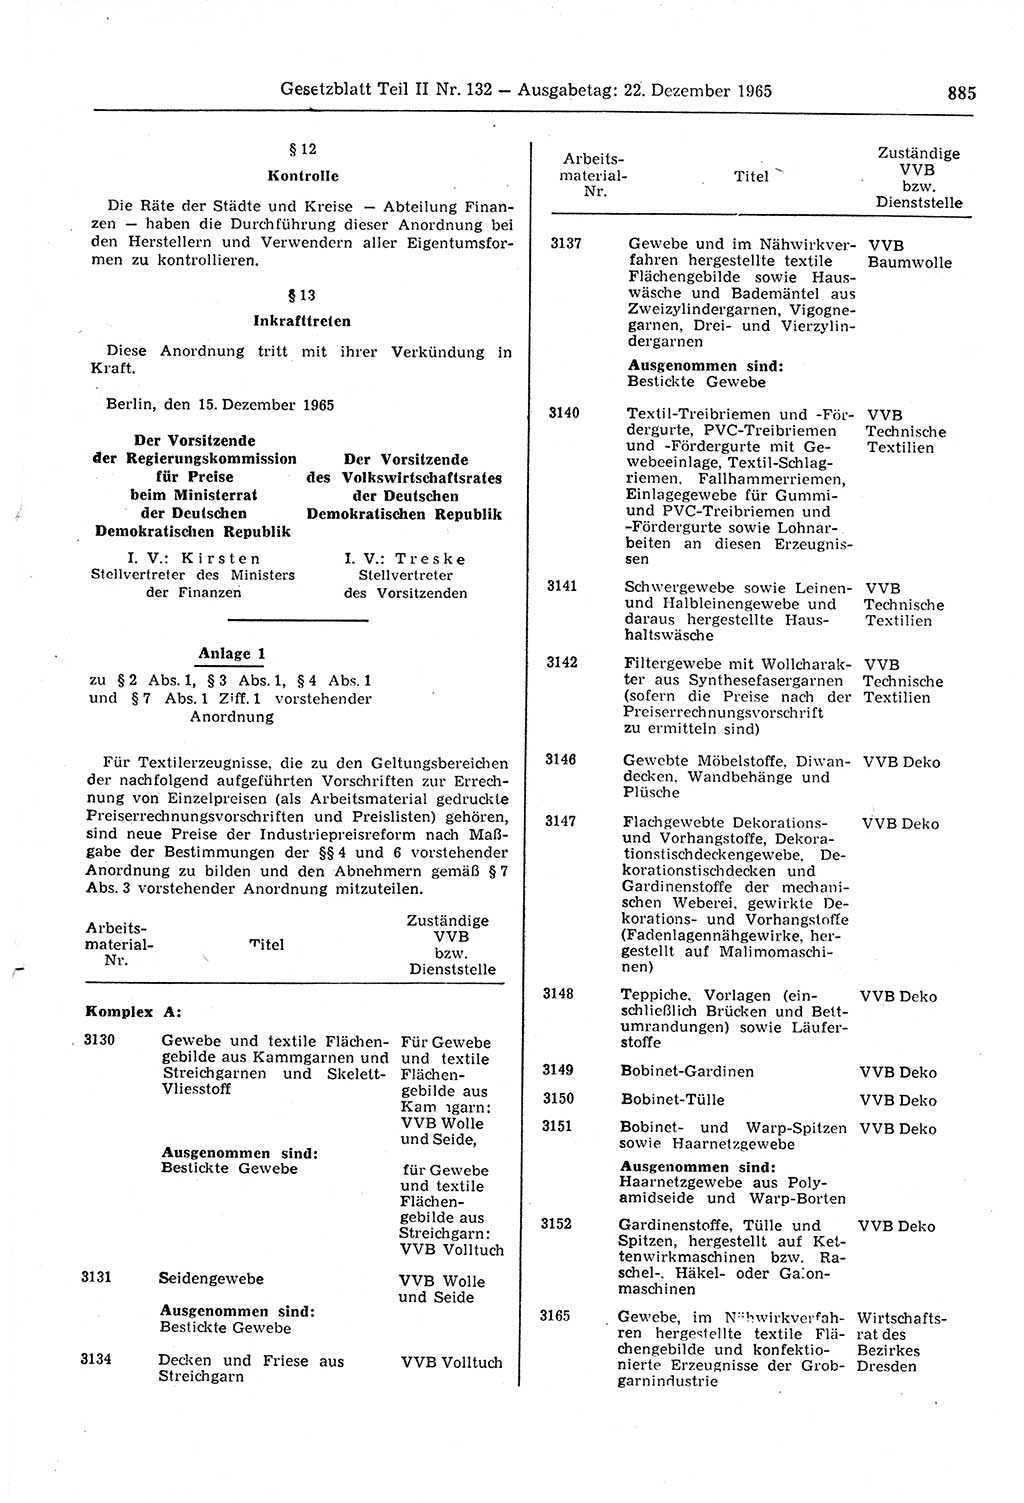 Gesetzblatt (GBl.) der Deutschen Demokratischen Republik (DDR) Teil ⅠⅠ 1965, Seite 885 (GBl. DDR ⅠⅠ 1965, S. 885)